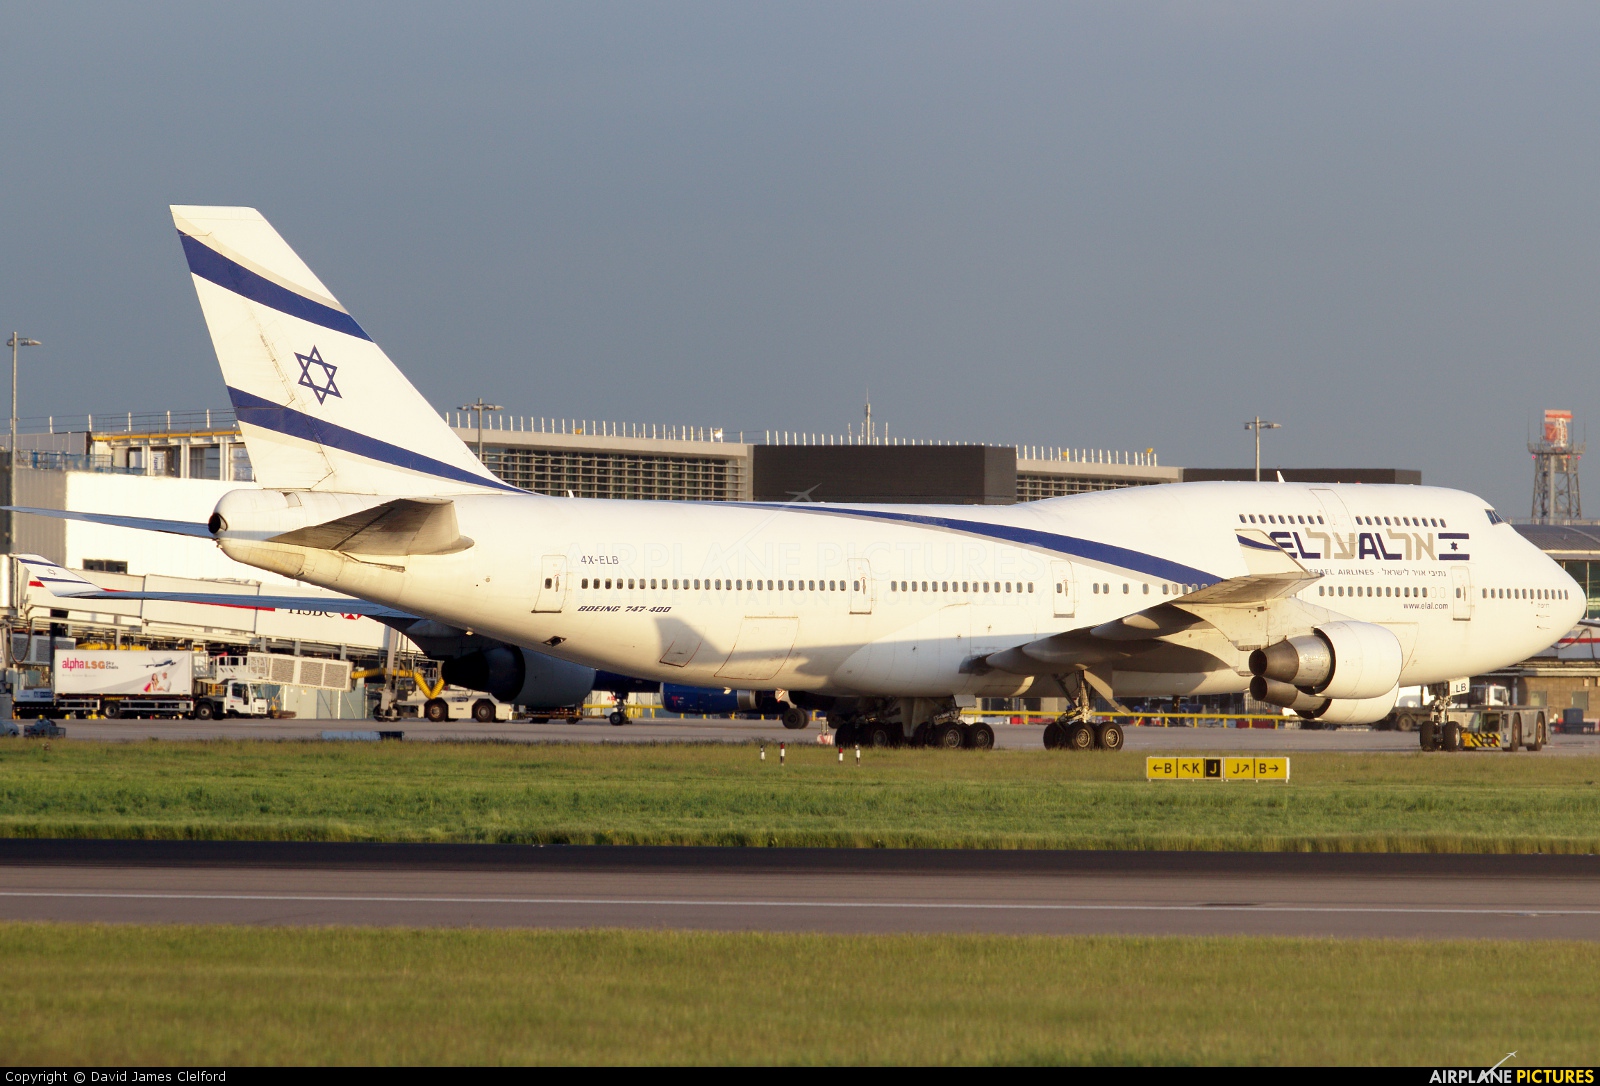 El Al Israel Airlines 4X-ELB aircraft at London - Heathrow